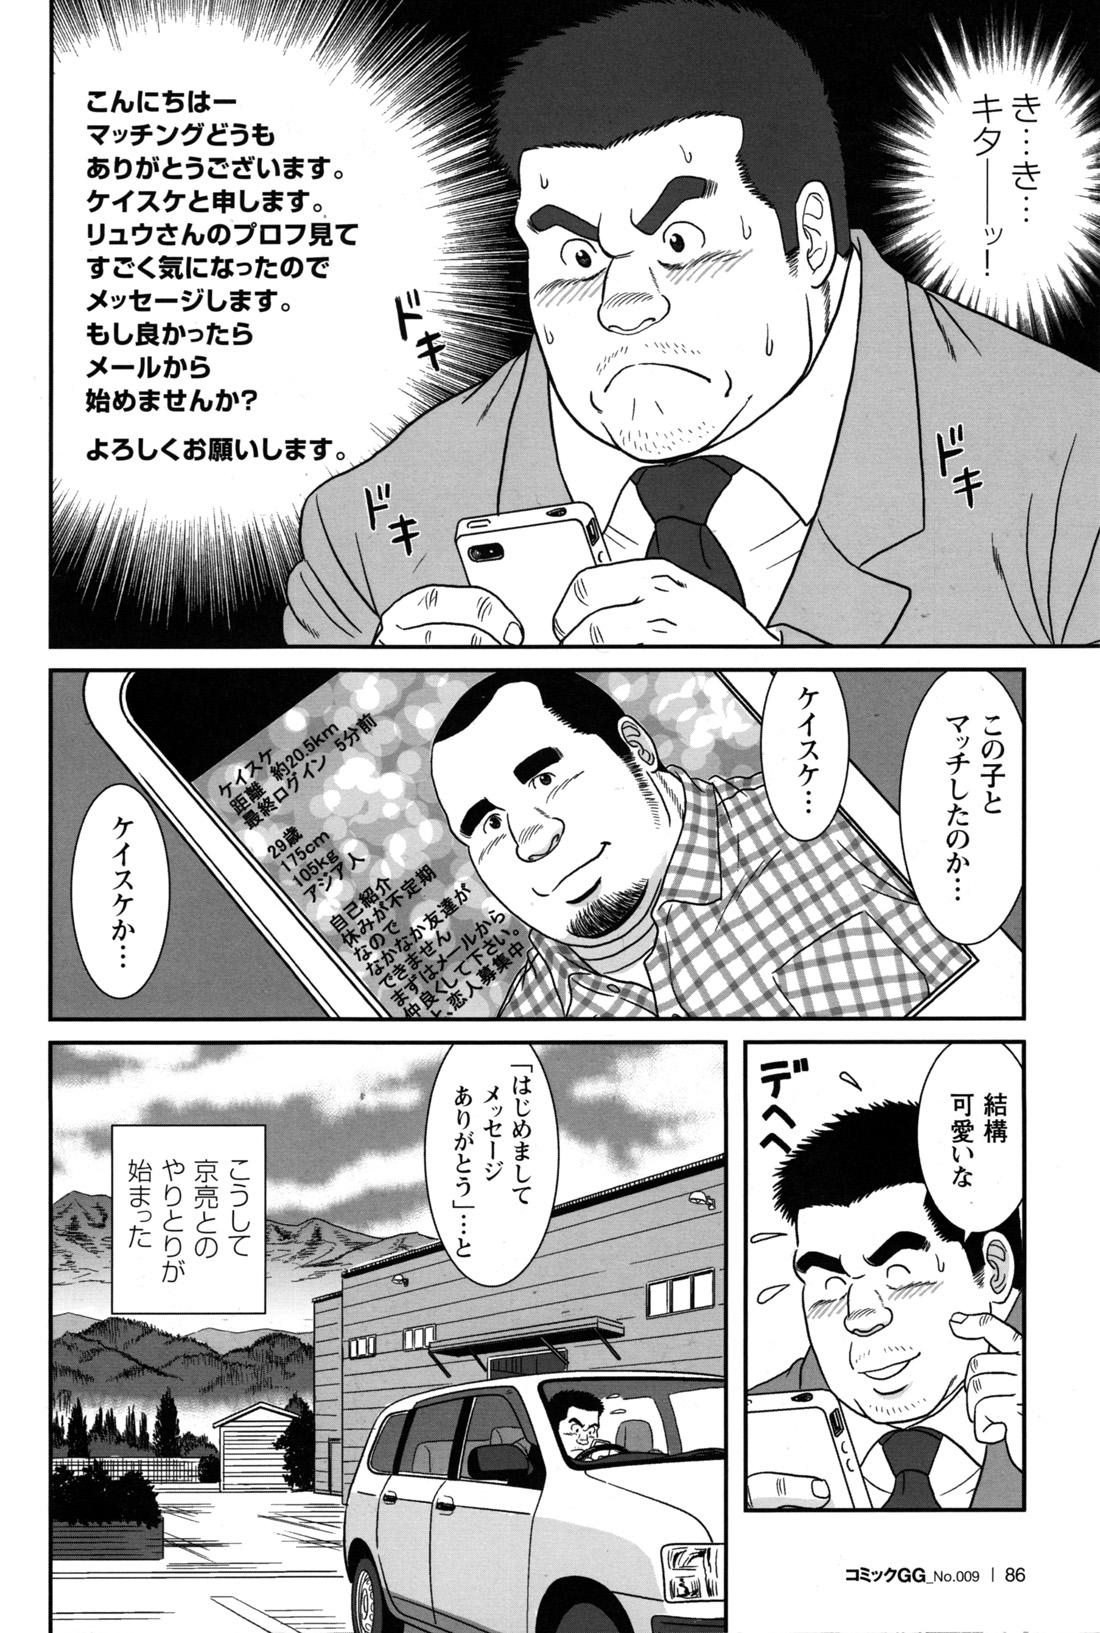 Comic G-men Gaho No.09 Gacchibi Zeme 81